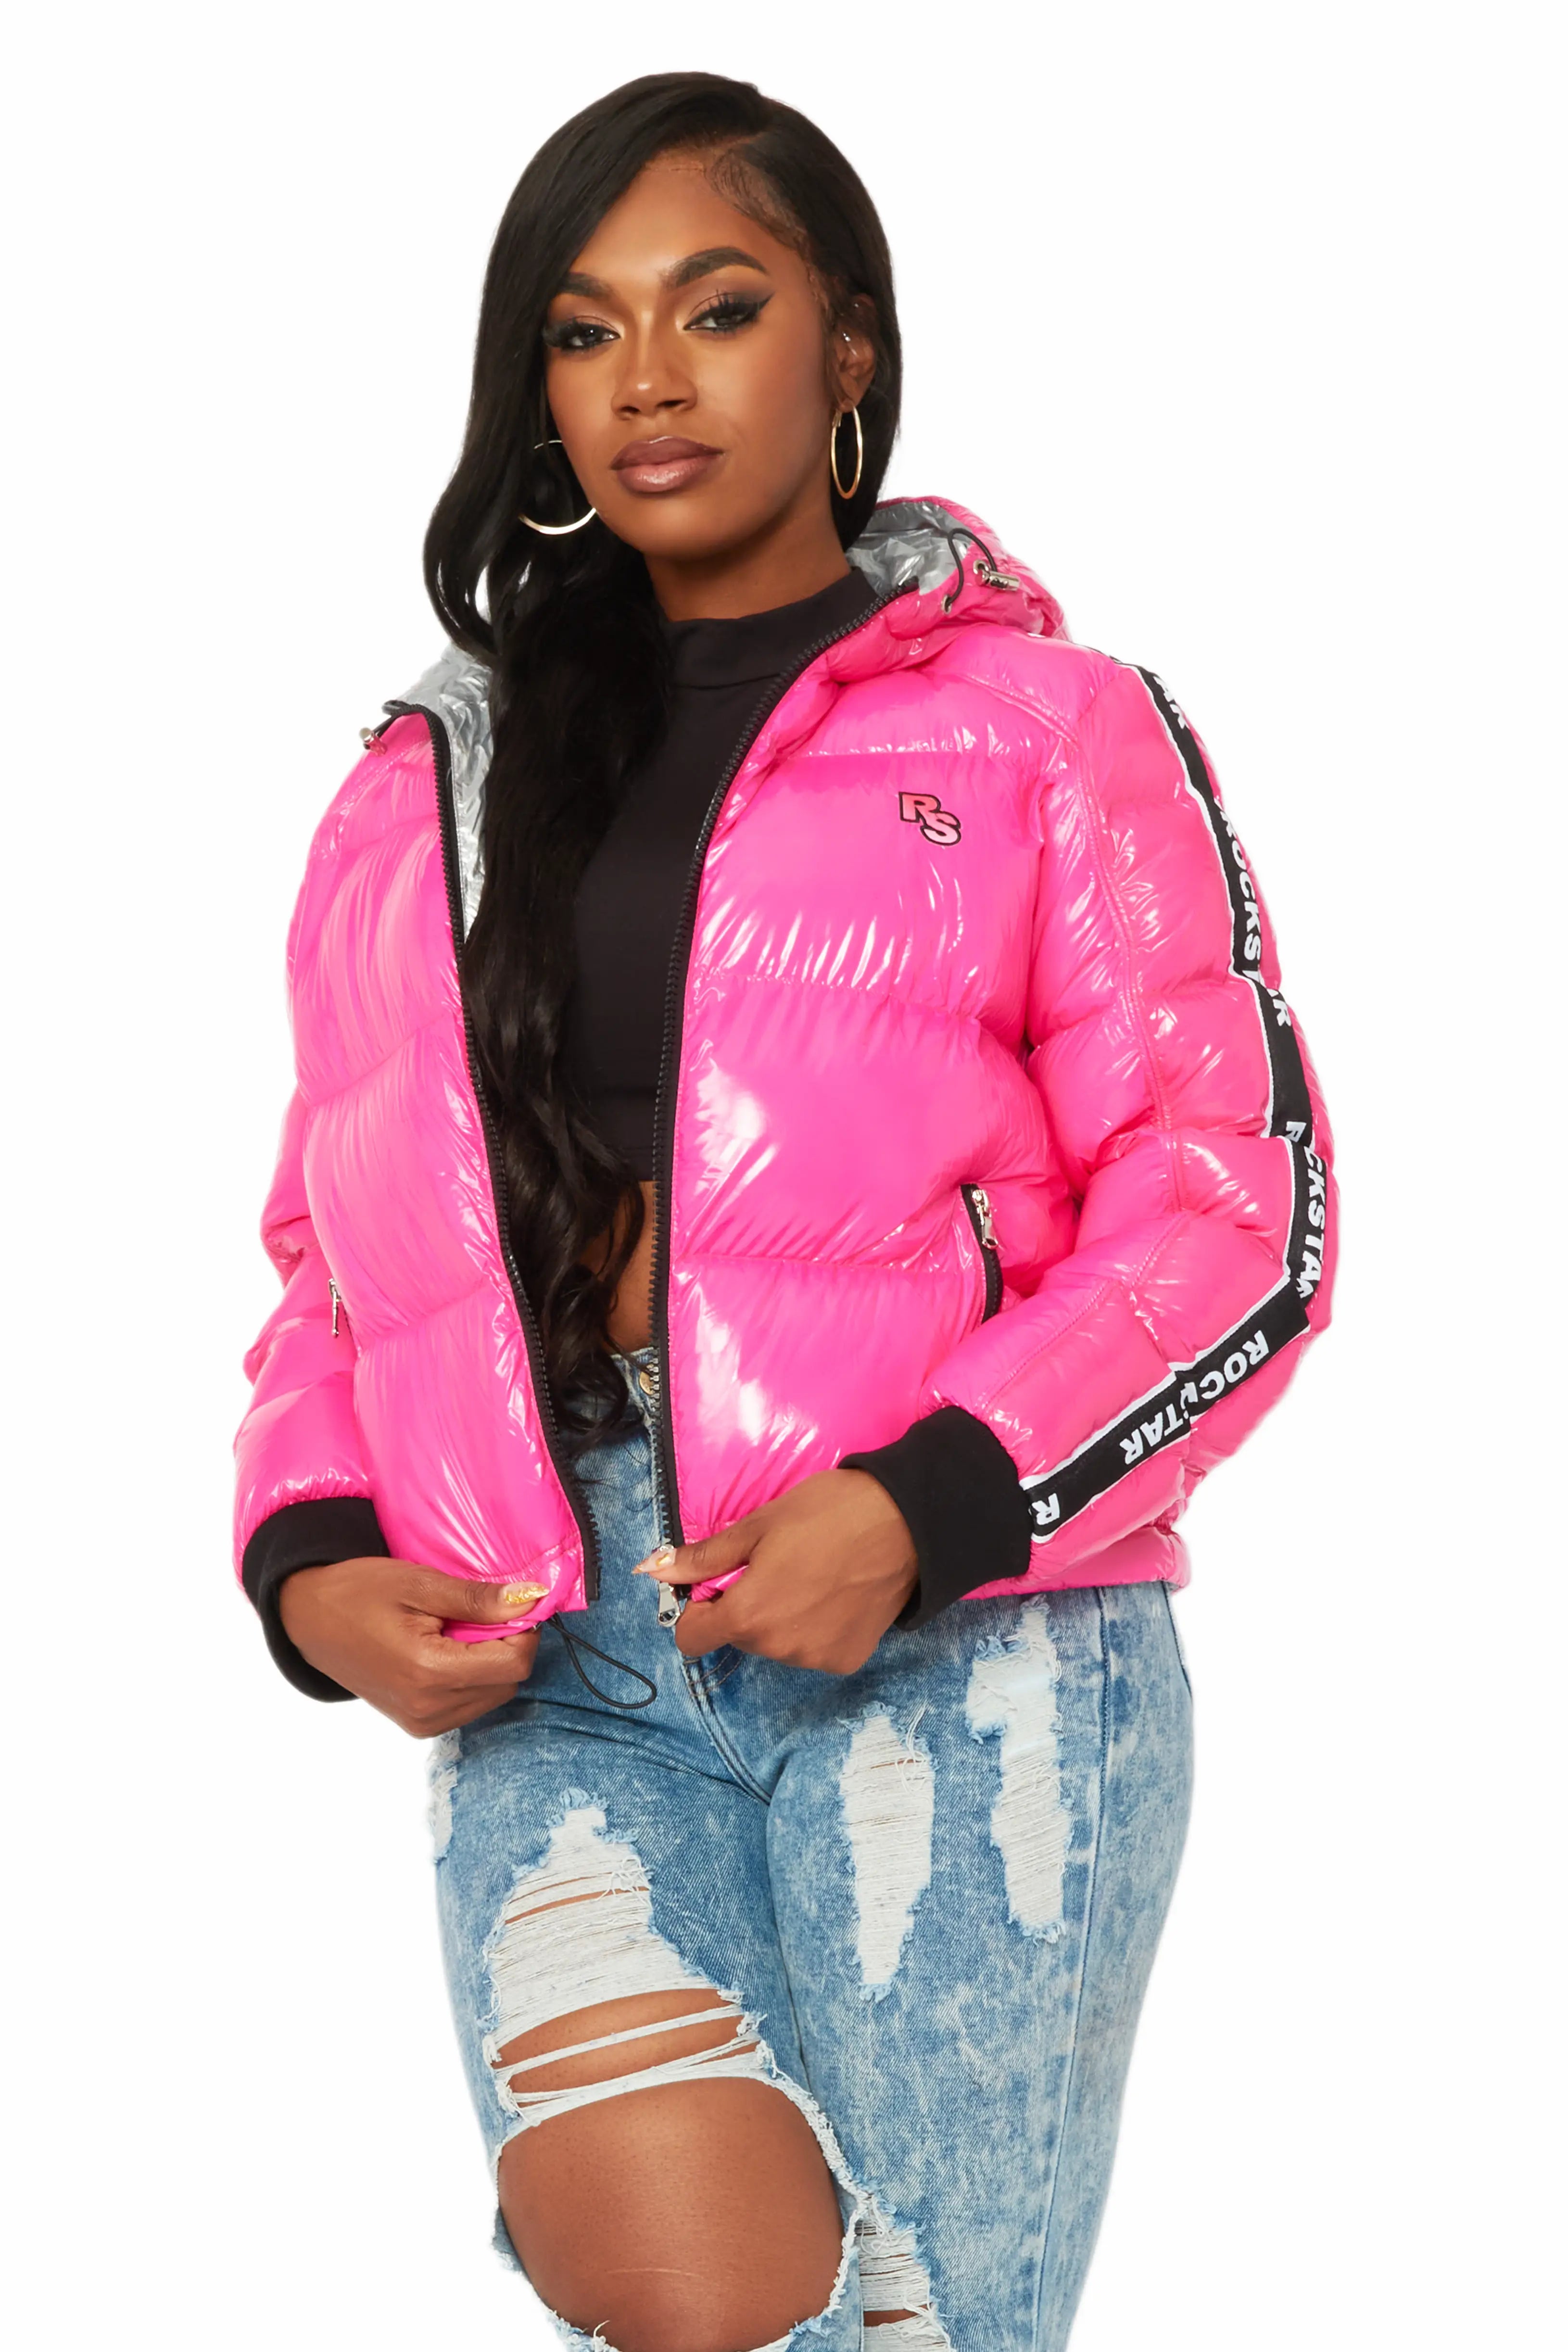 natalie hot pink jacket – The Copper Petal